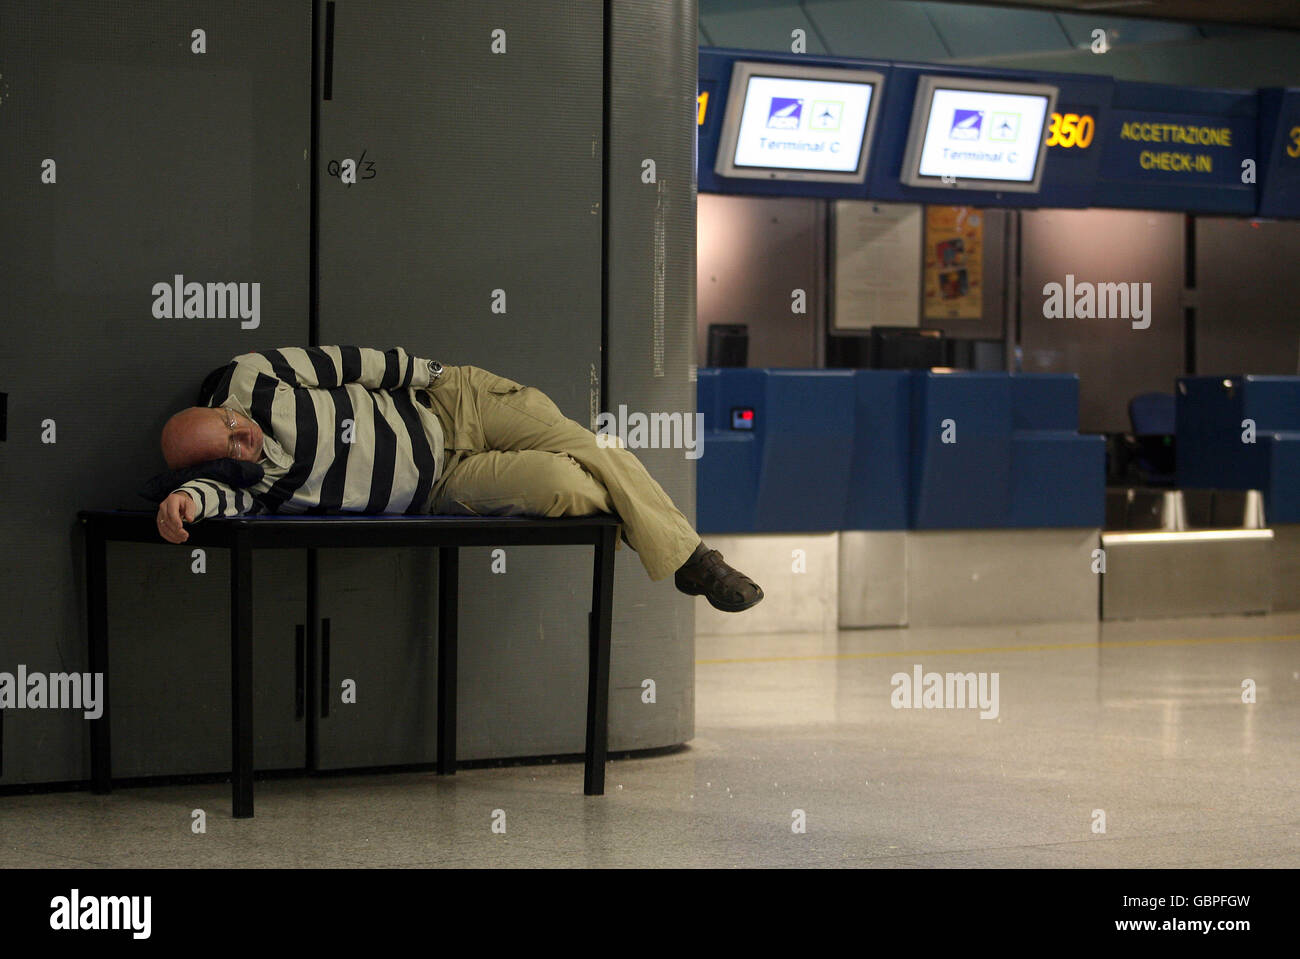 Les fans de Manchester United dormaient à l'aéroport de Rome Fiumicino tôt dans le matin après le match la veille Banque D'Images